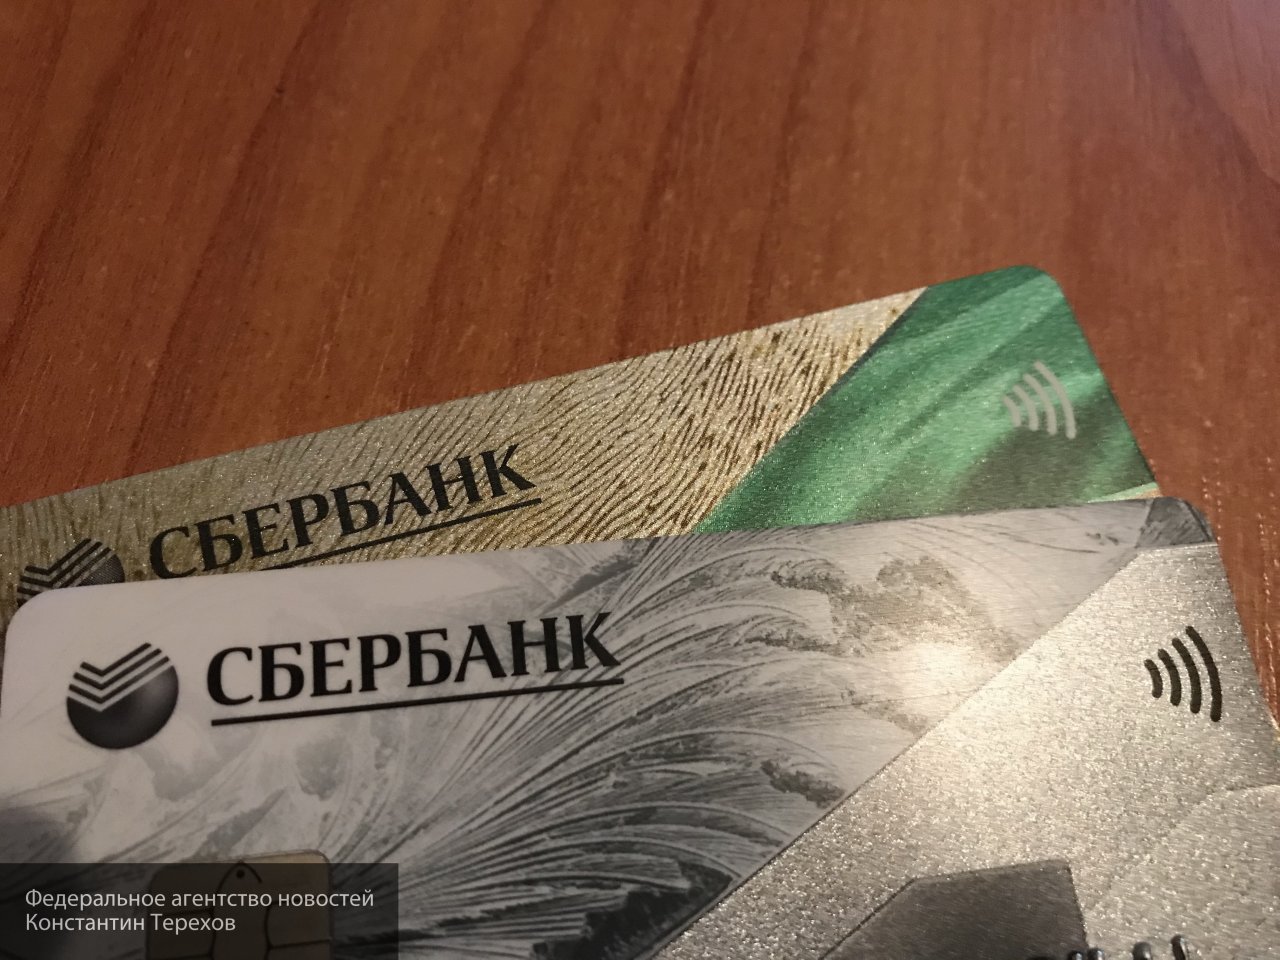 Жена депутата-наркомана Резника попалась на очевидный развод, потеряв 100 тысяч рублей